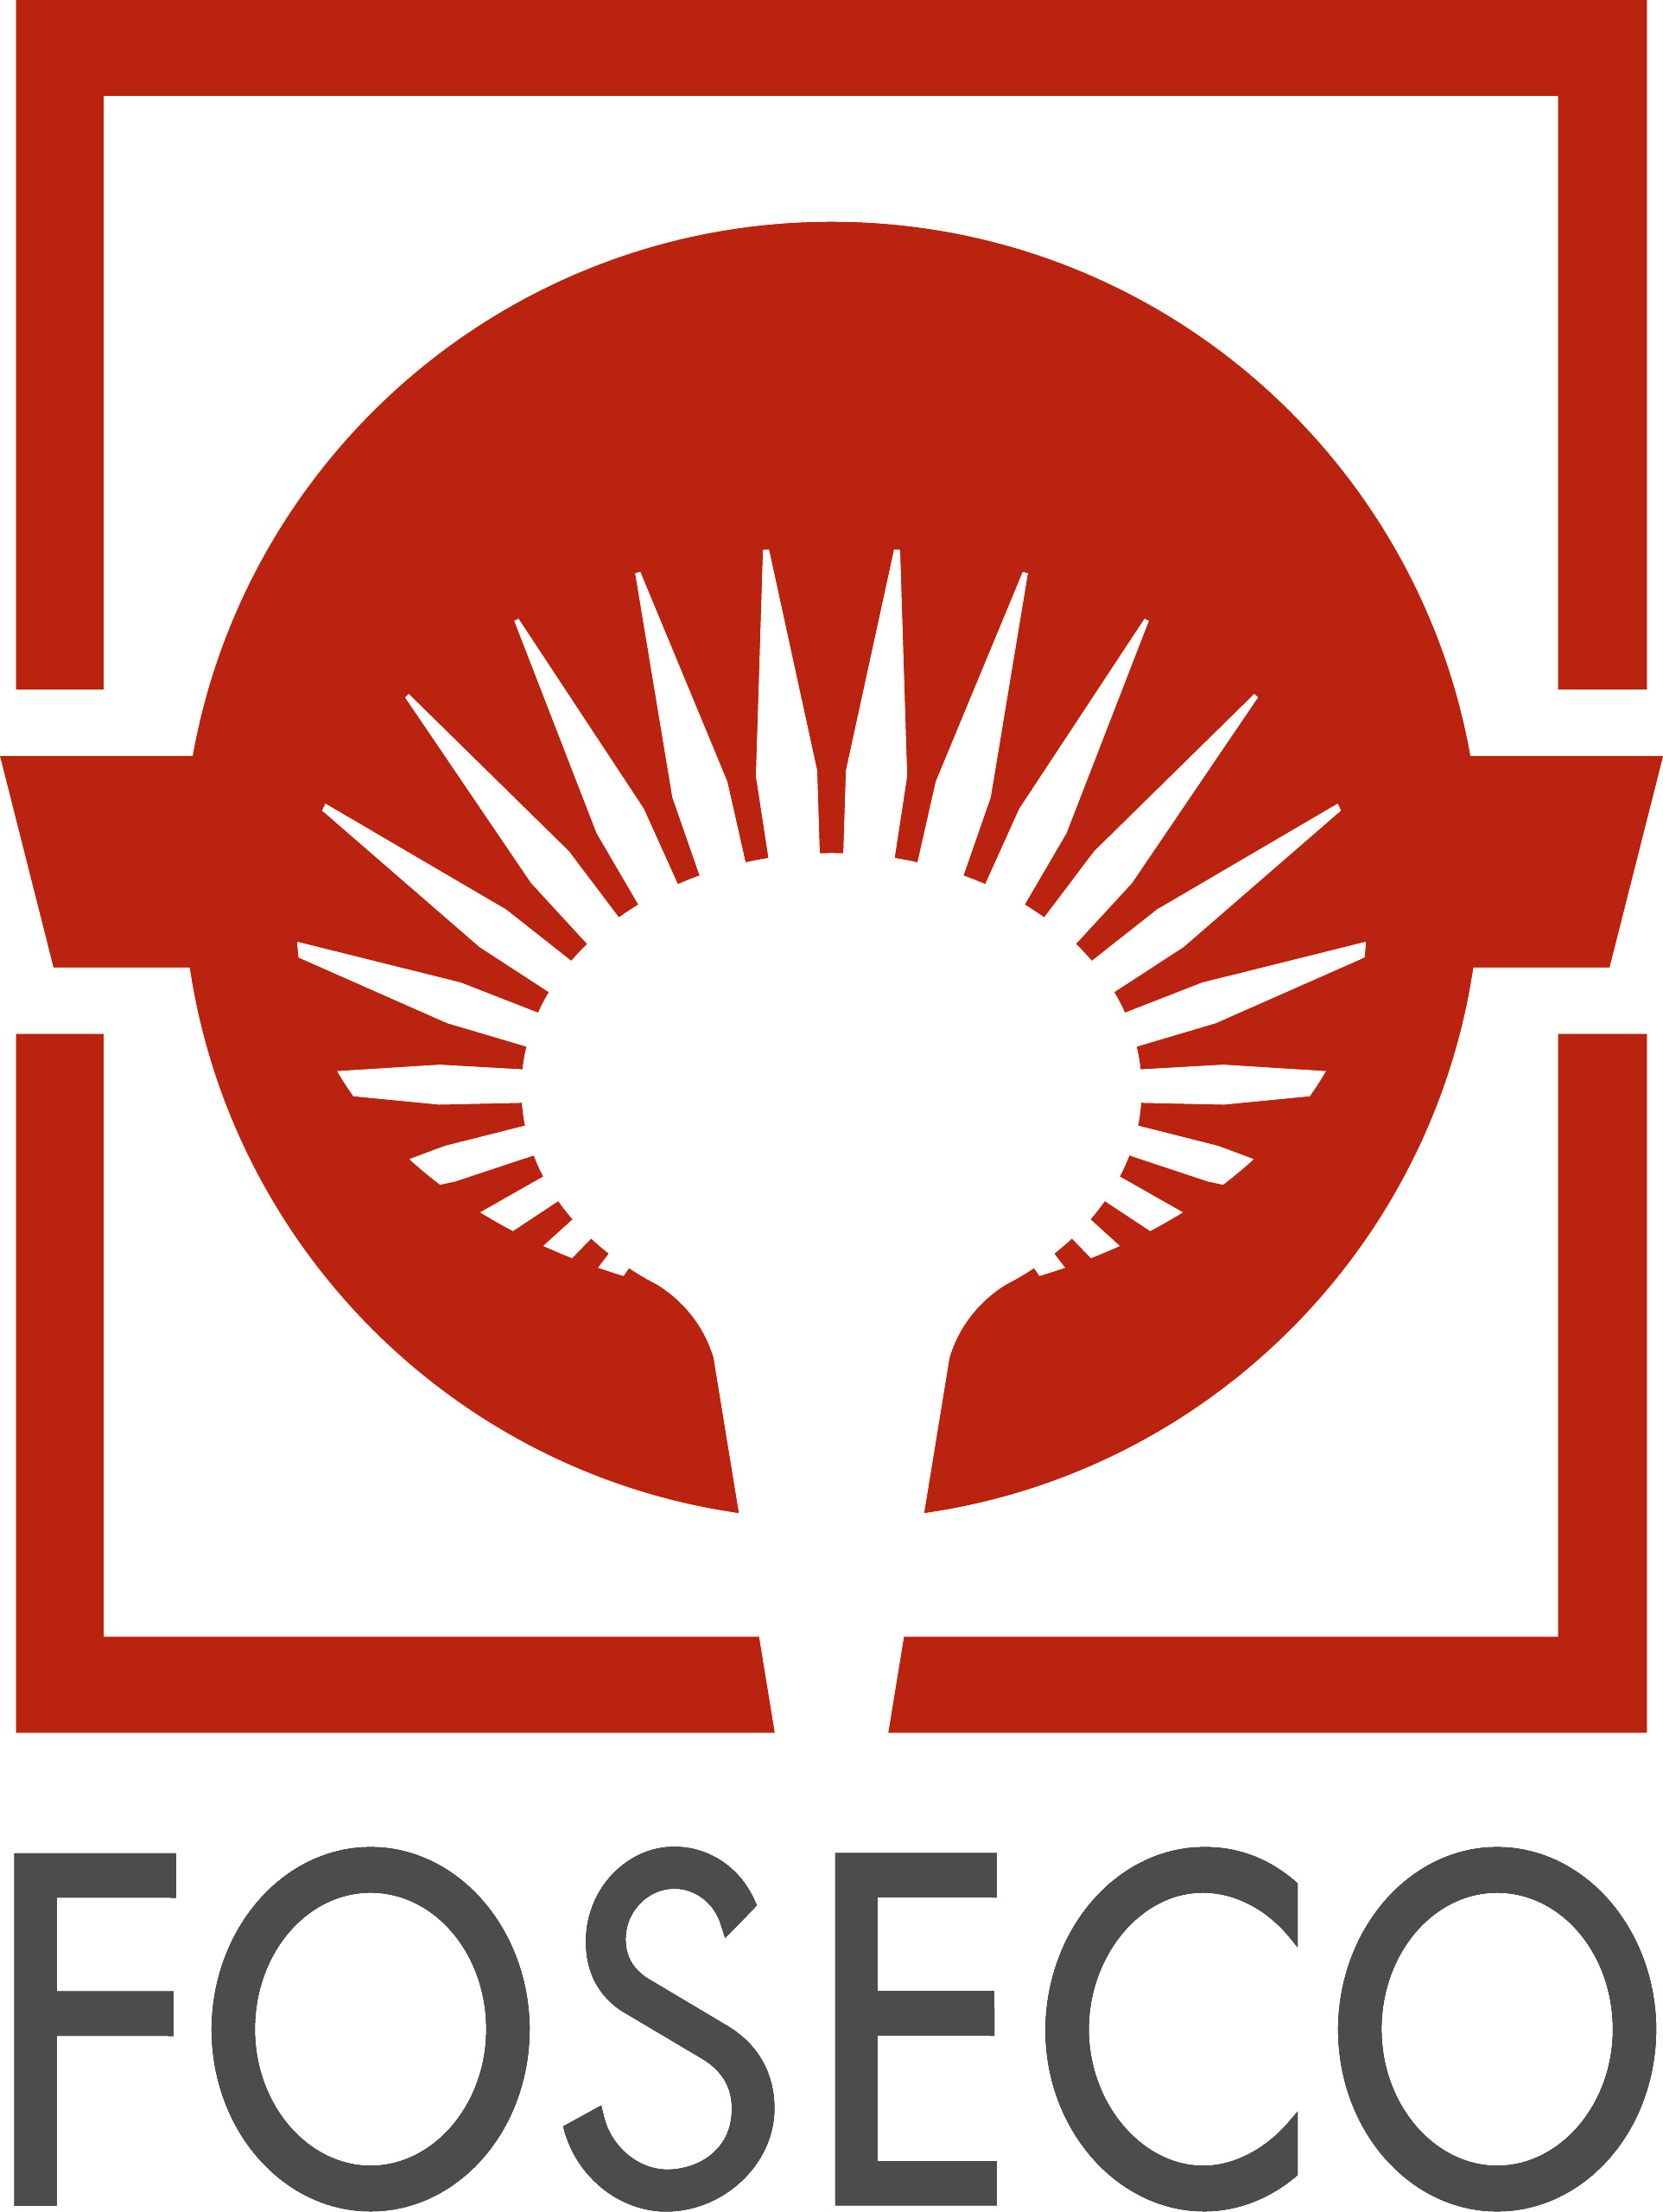 Vesuvius GmbH - Foseco Foundry Division